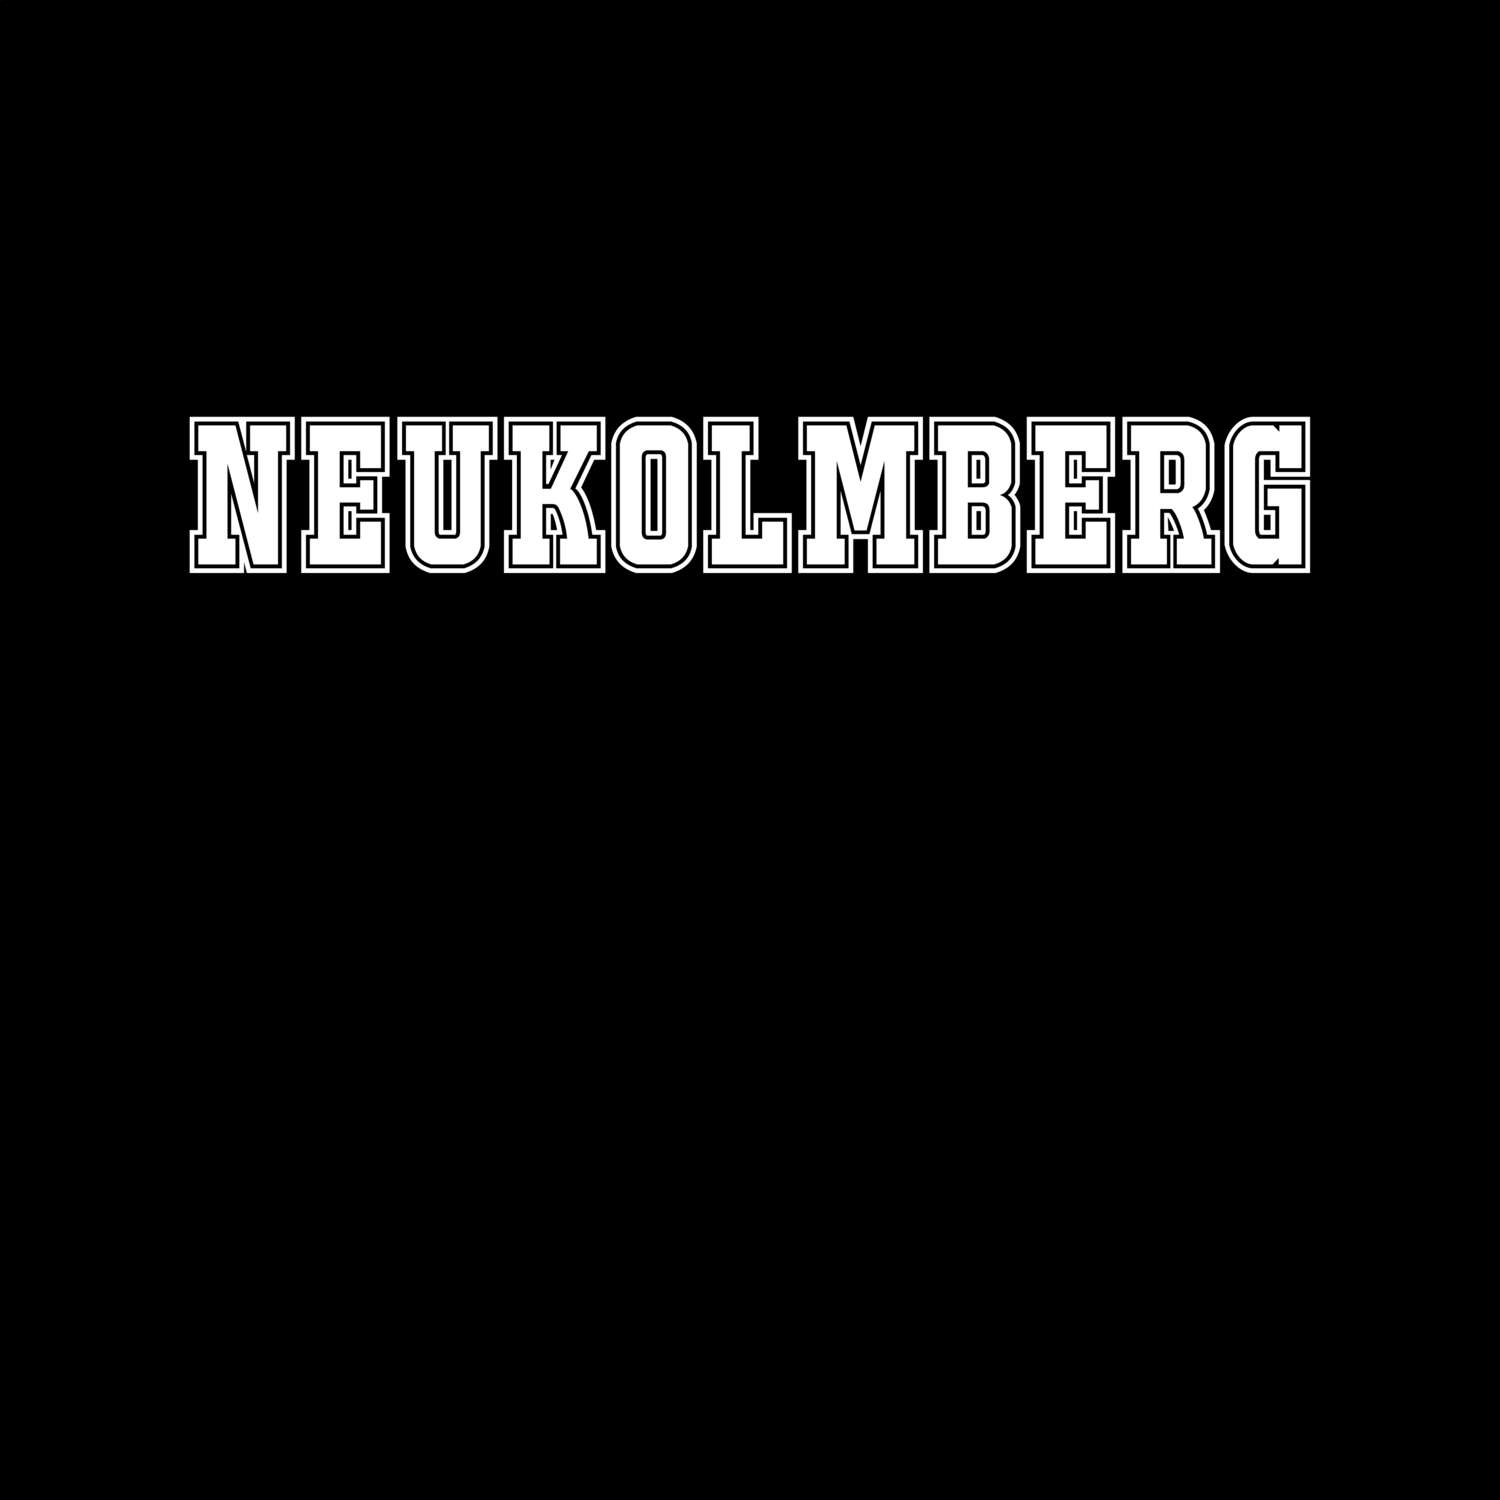 Neukolmberg T-Shirt »Classic«